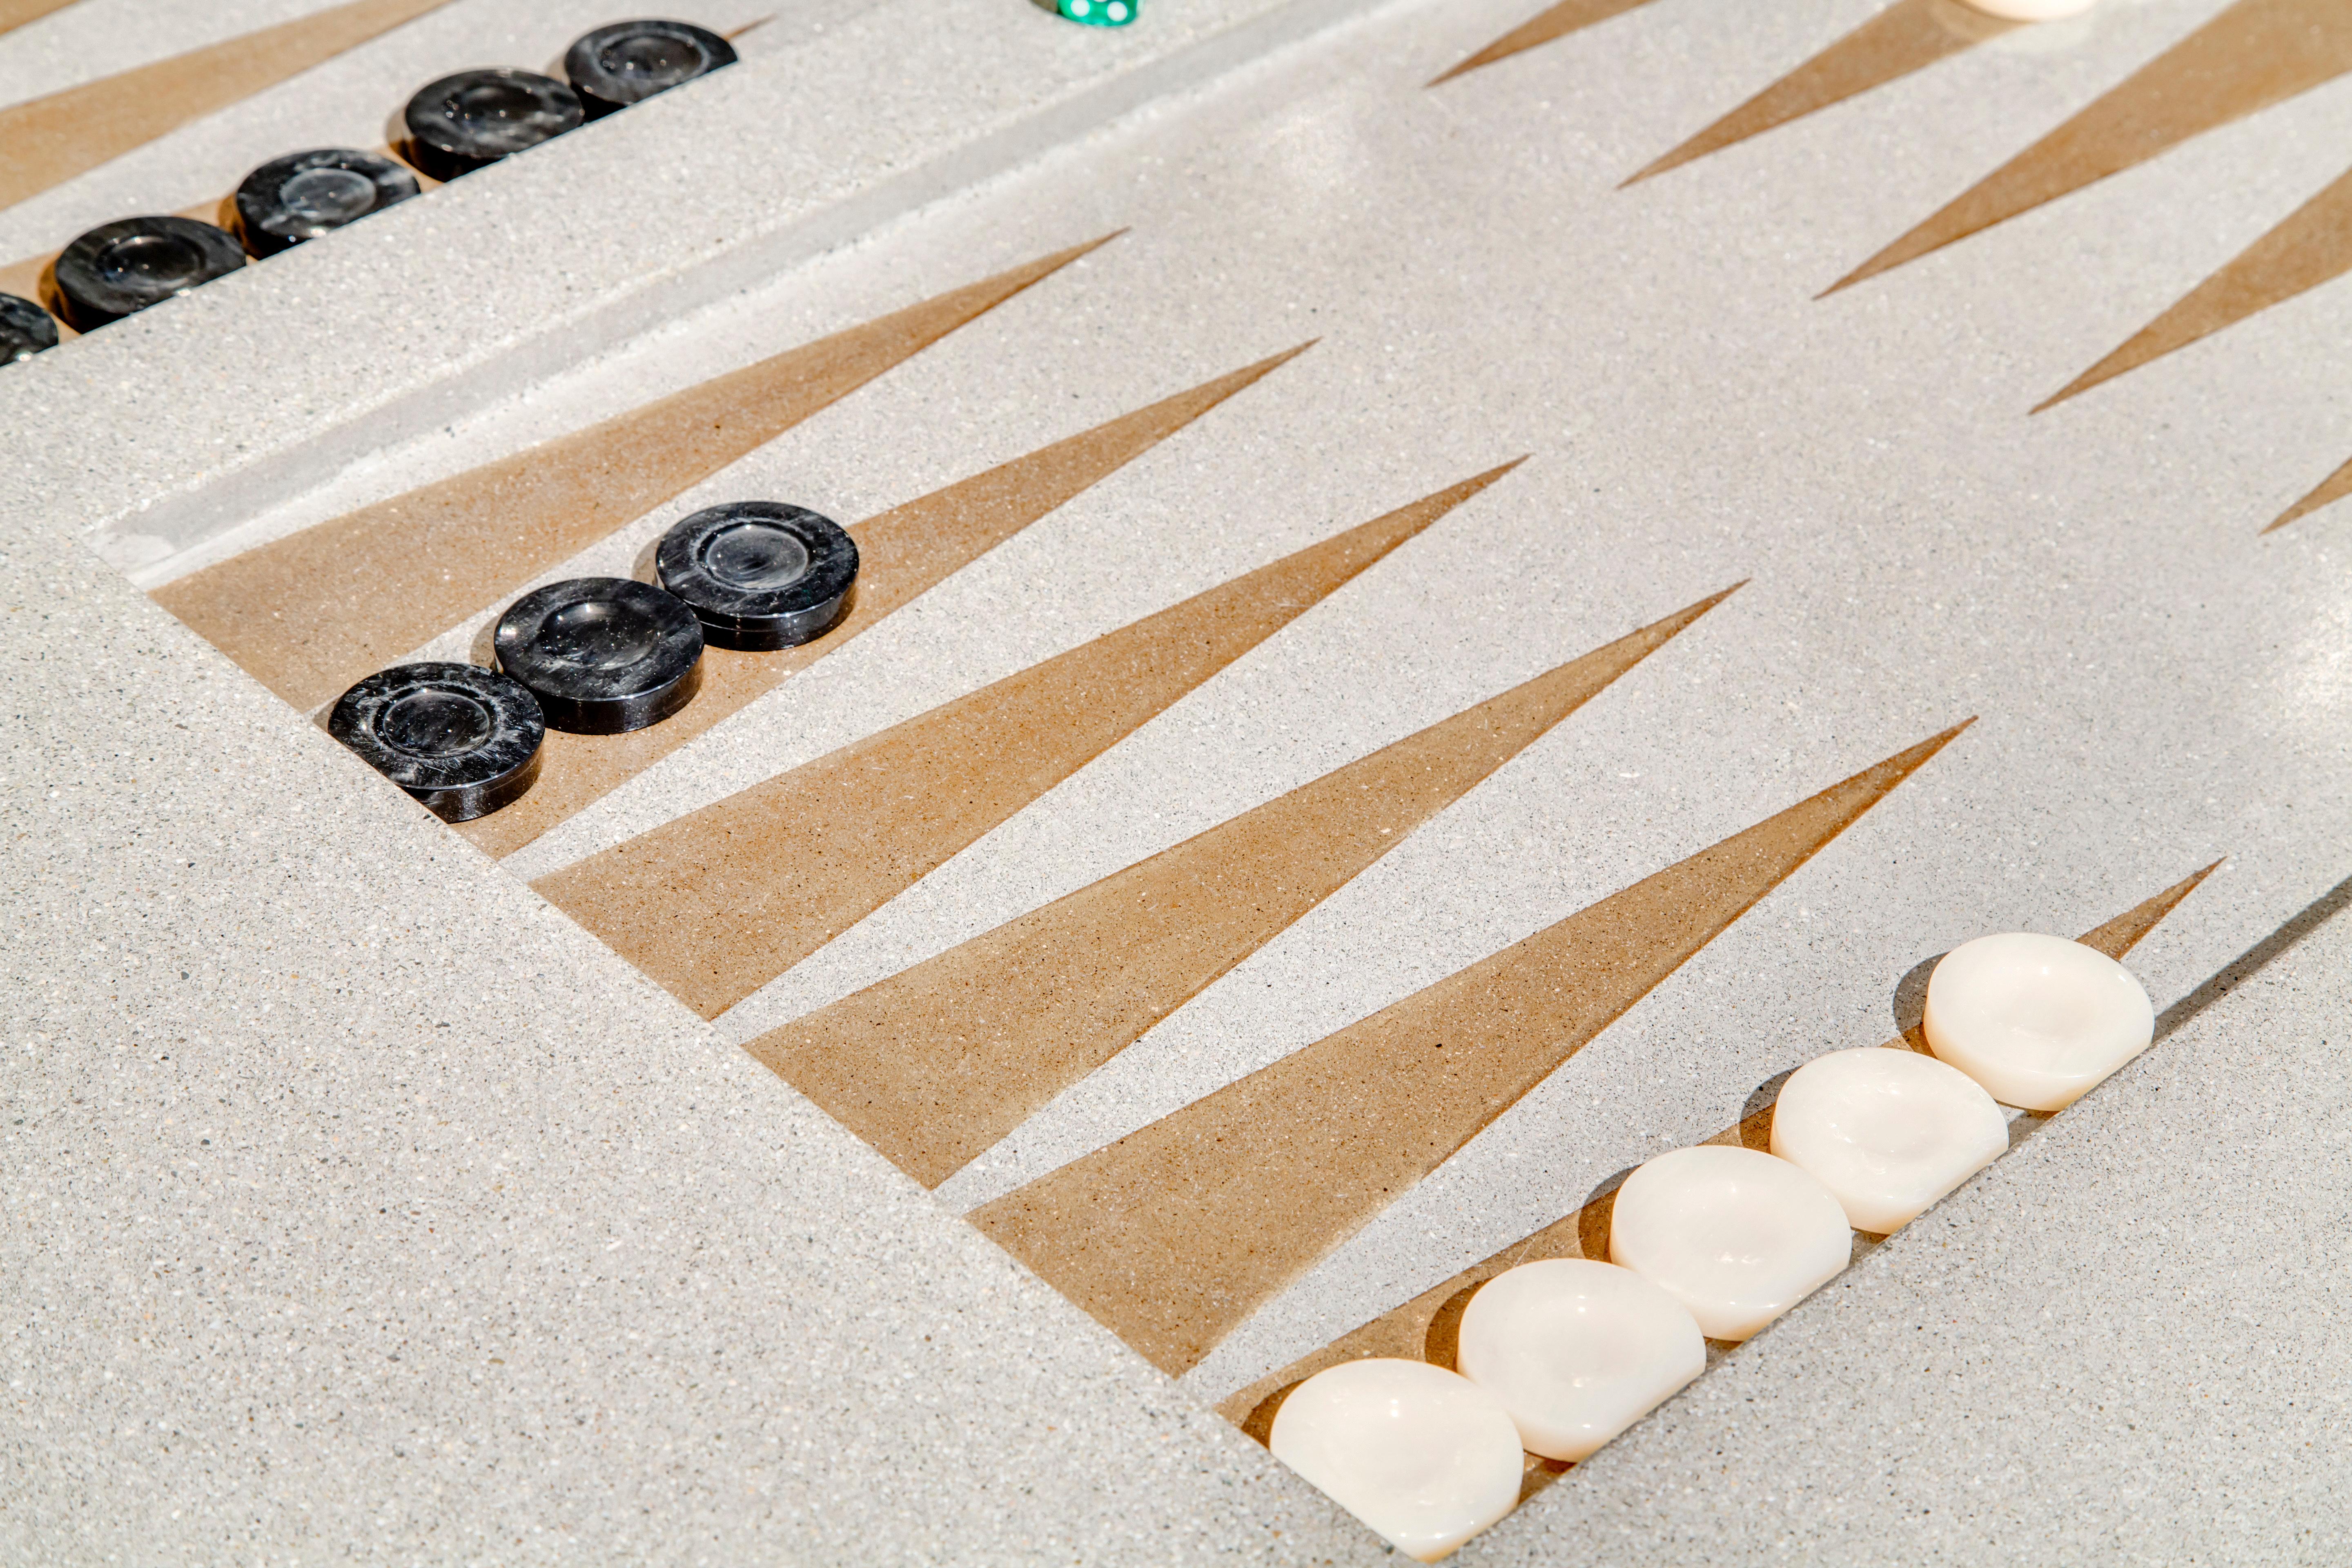 Table de Backgammon en béton par James de Wulf.  Chaque table est fabriquée sur mesure pour les espaces de vie intérieurs et extérieurs. La table est scellée et cirée pour un éclat unique. 

La table se patinera progressivement au fil du temps,